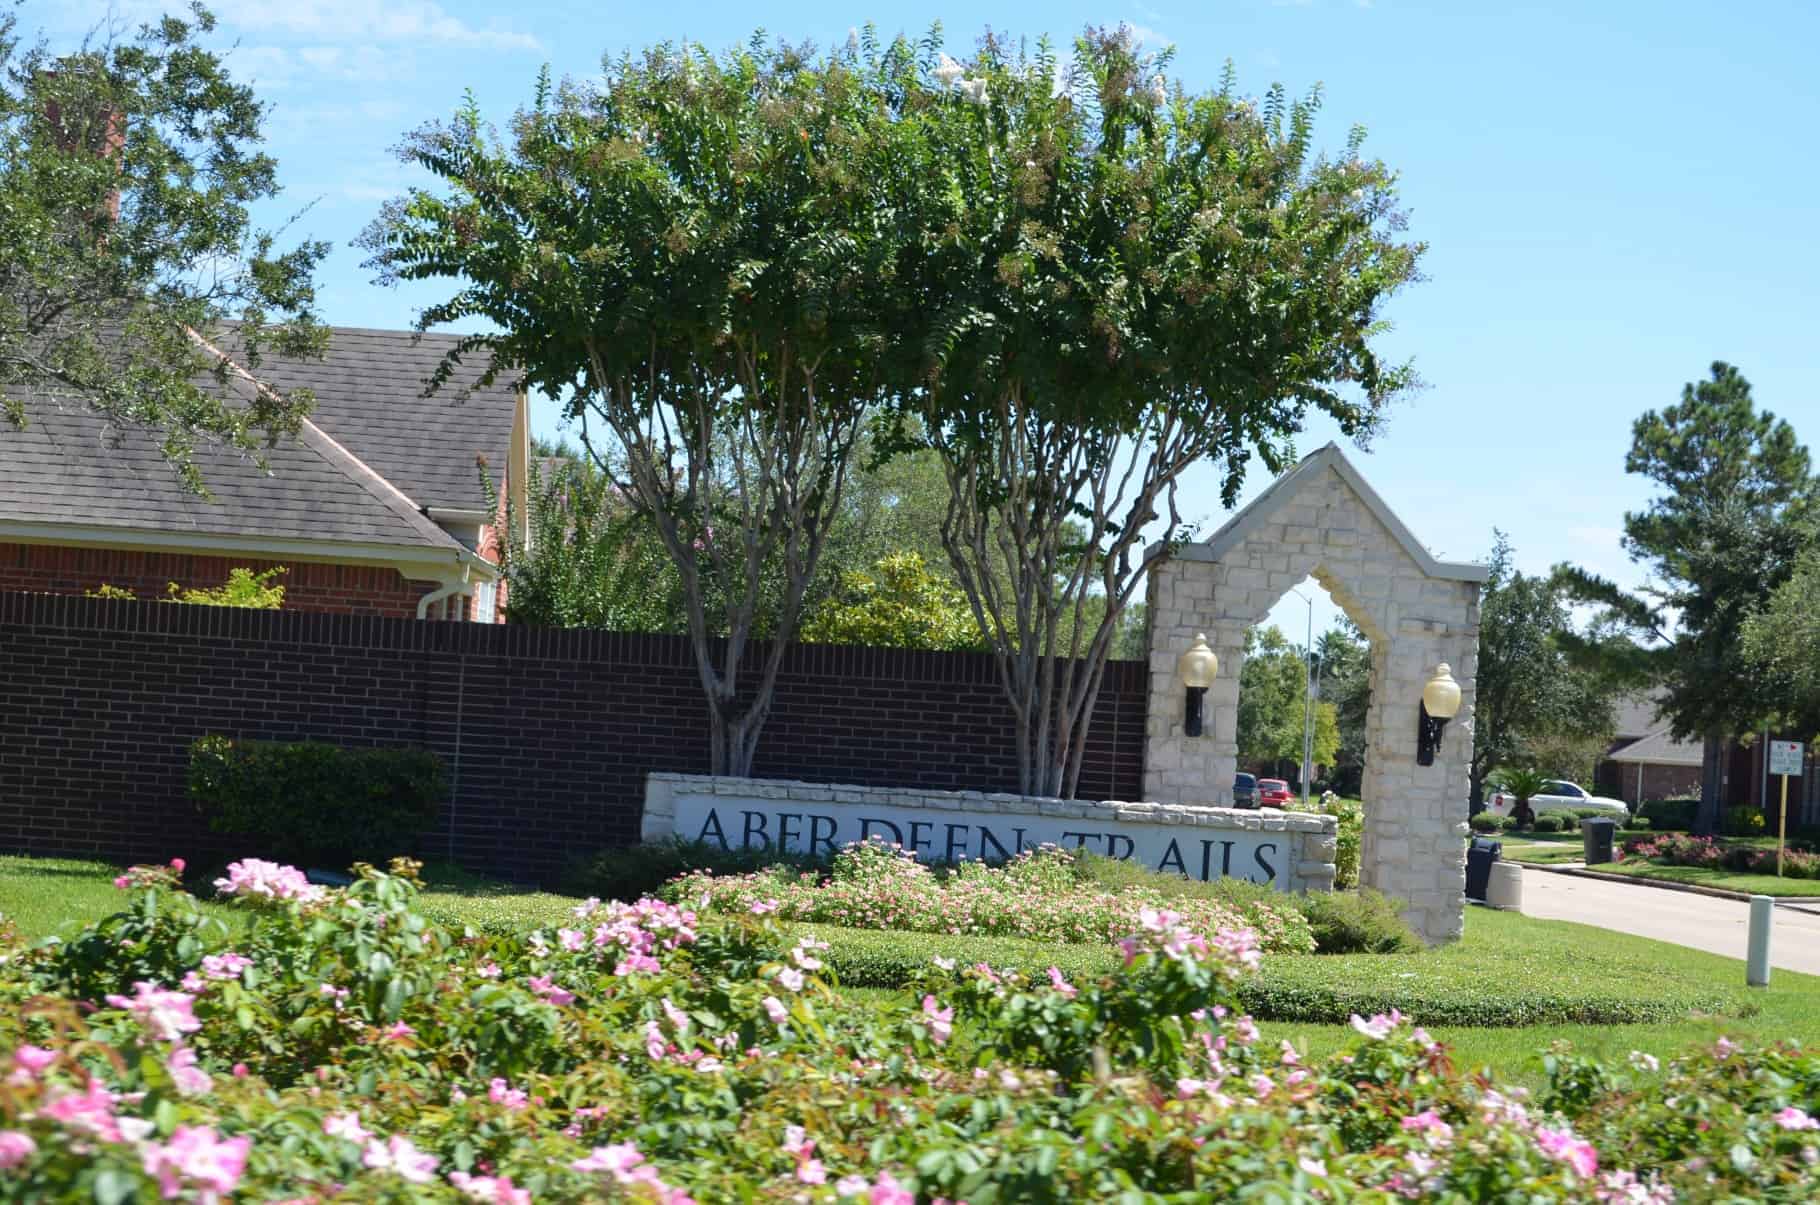 Aberdeen Trails Houston TX Sign 2